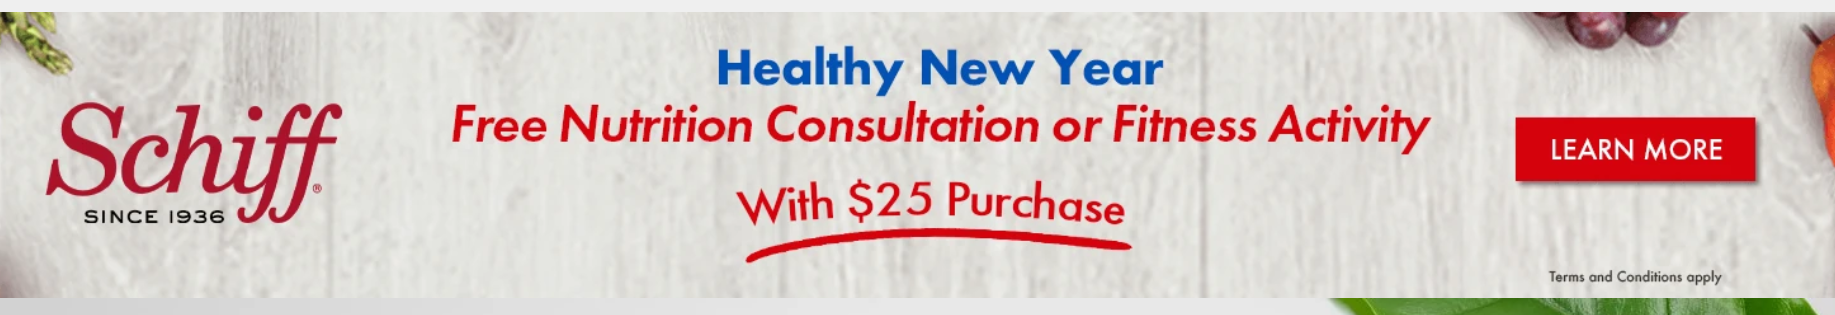 Schiff在特定超市买指定商品满$25,送价值$25的营养咨询或者健身券